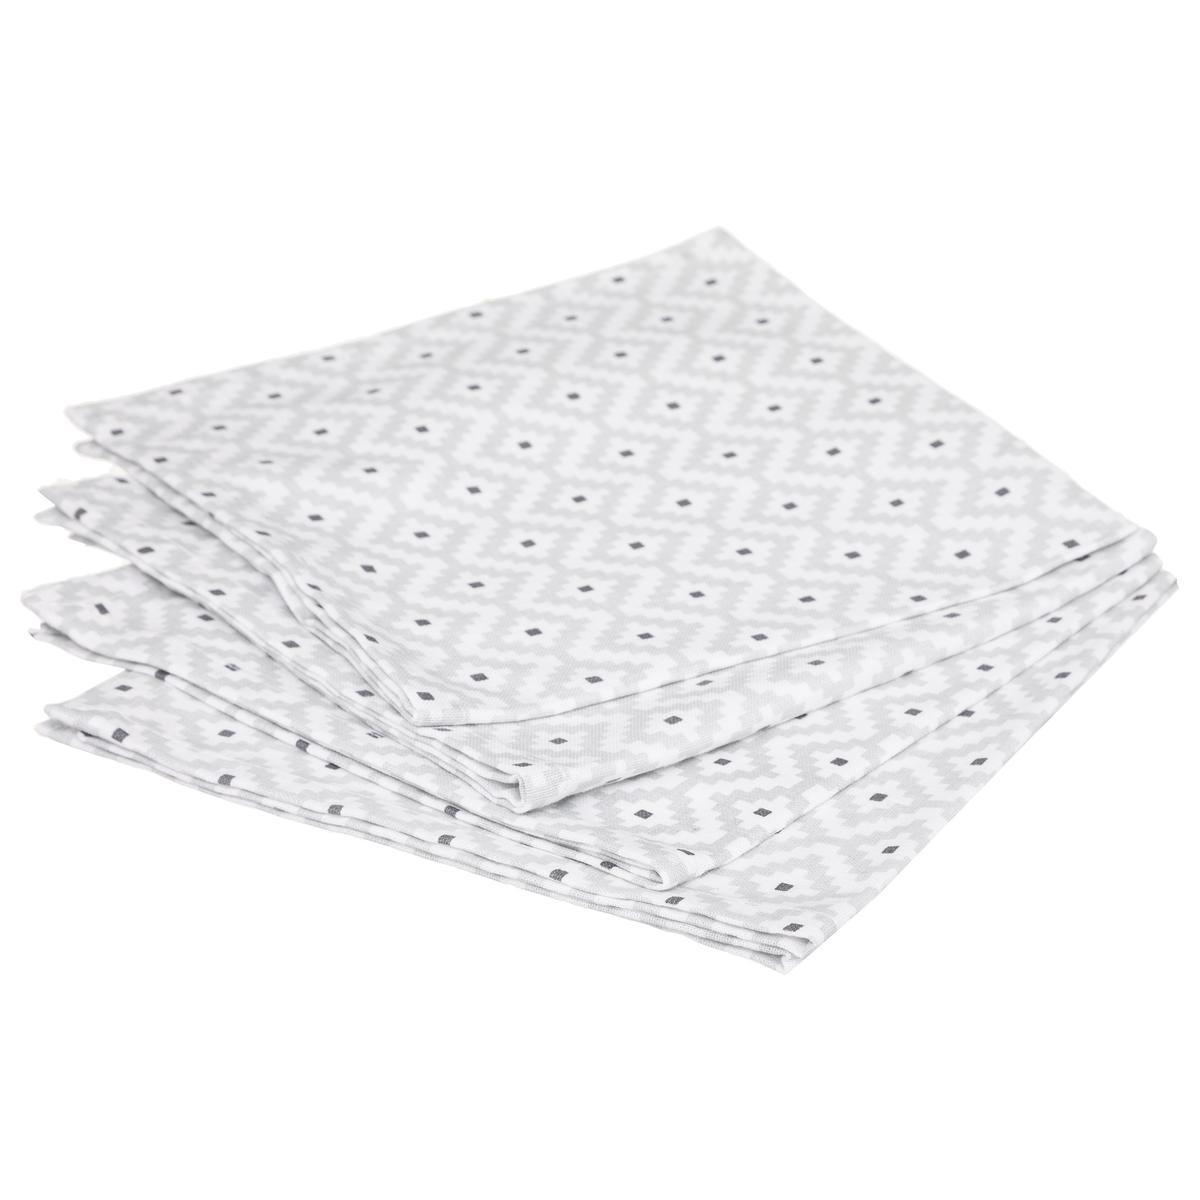 4 serviettes de table en tissu imprimées Etnik - L. 40 x l. 40 cm - Gris - ATMOSPHERA